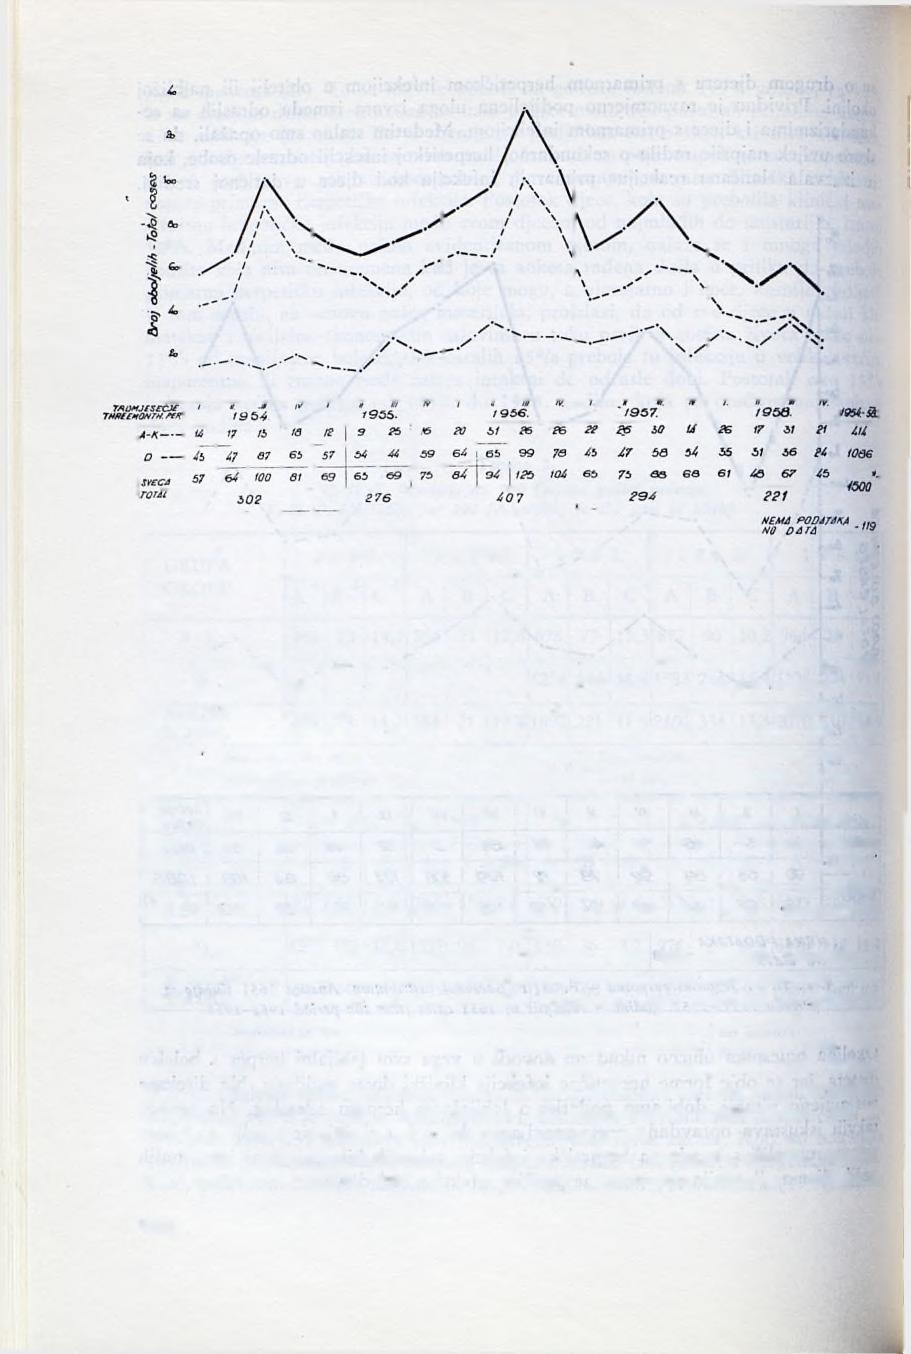 Sl. 5. F. H. P. Tok obolijevanja -po tromjesečjima 1954.-1958. Analiza 150 slučajeva - F. H. P. Tbreemonthly trend of incidence 1954-1958.